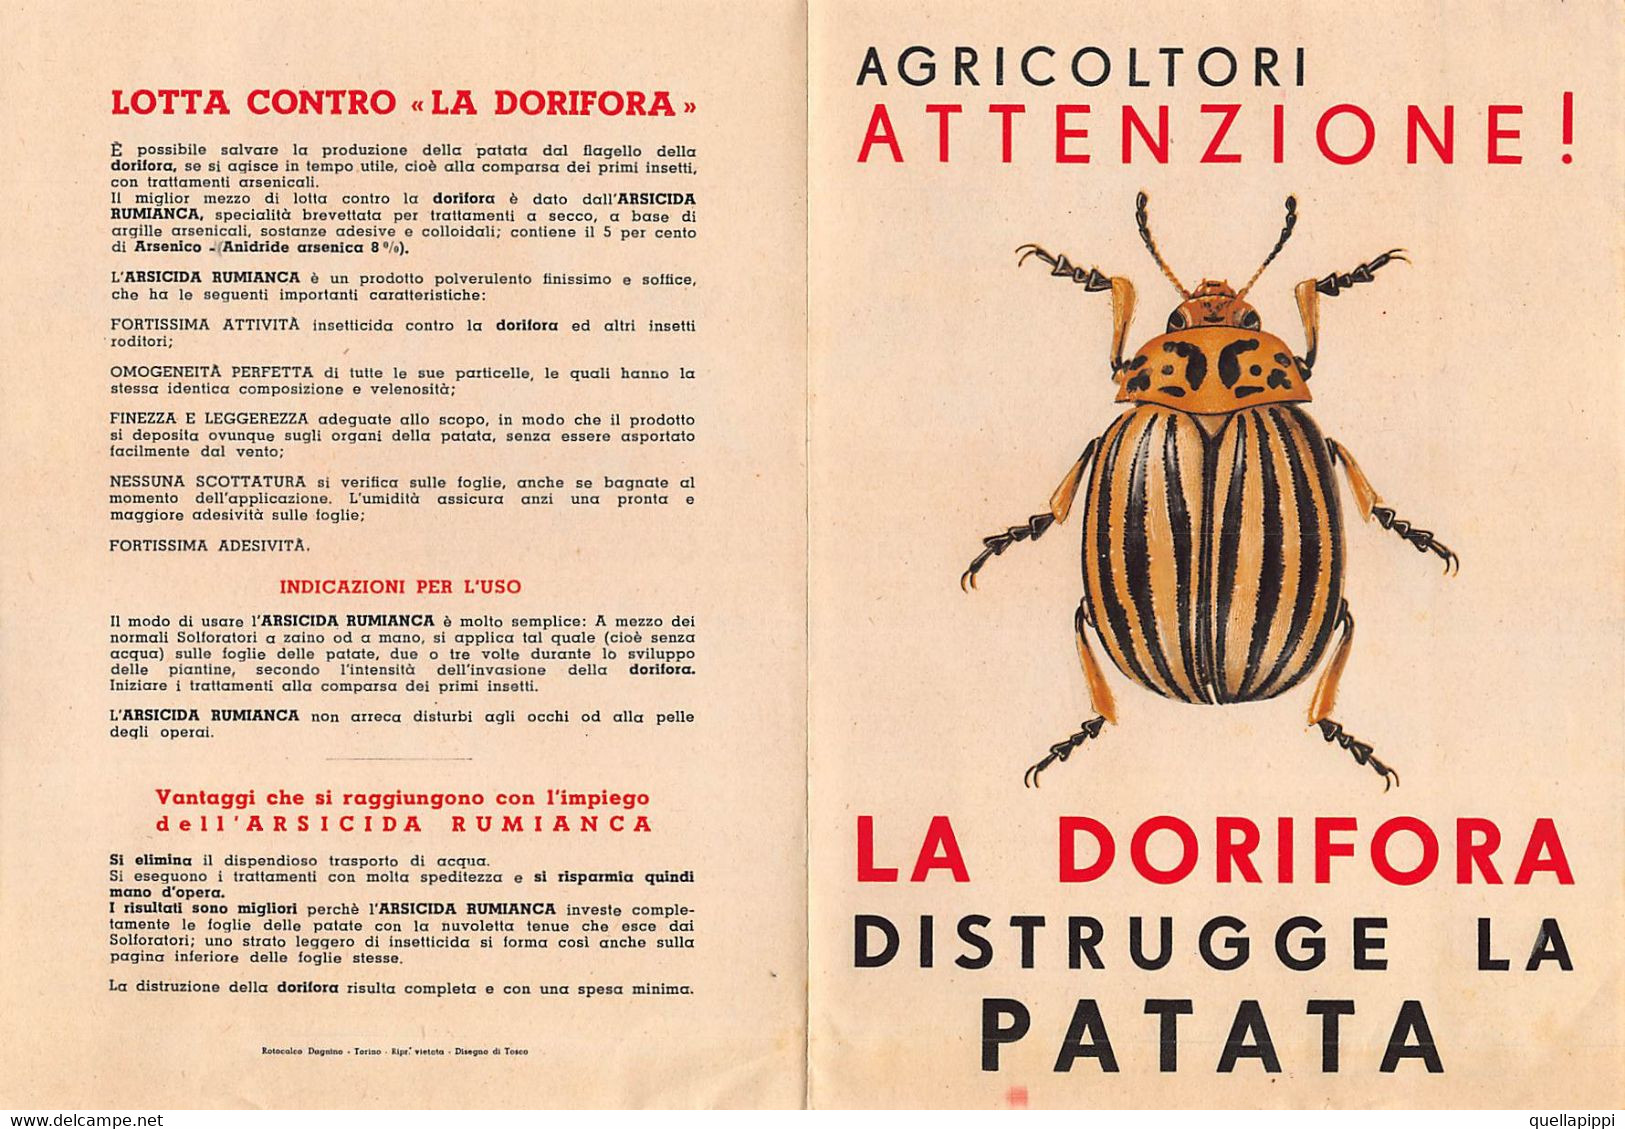 013932 "AGRICOLTORI ATTENZIONE! - LA DORIFORA DISTRUGGE LA PATATA - ARSICIDA RUMIANCA"  DISEGNO DI TOSCO. PUBBL. '50 - Pubblicitari